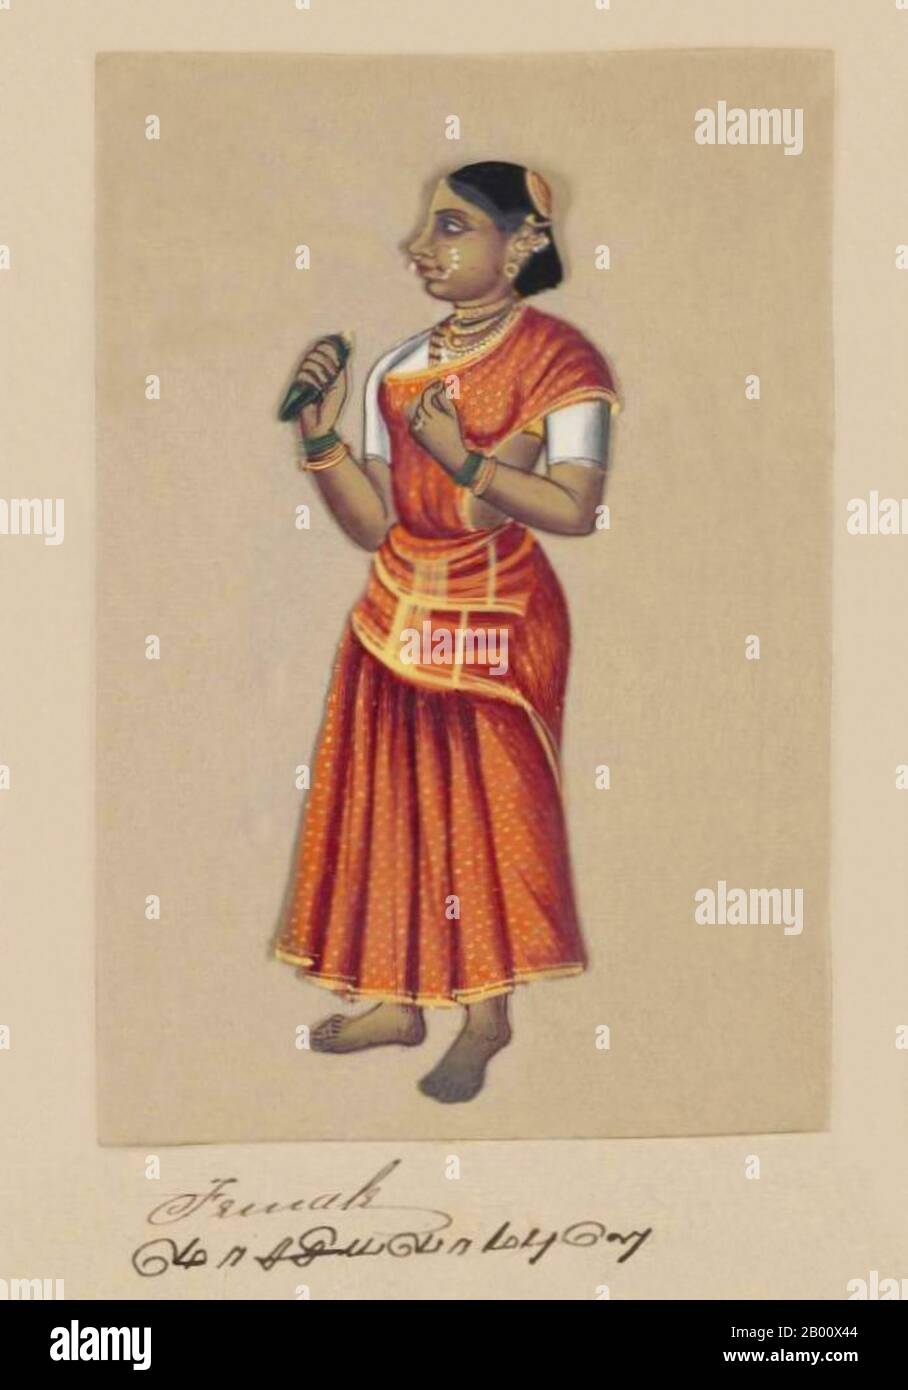 Indien: 'Eine Indische Frau'. Handkoloriertes Bild auf einem dünnen Glimmerblatt aus einem Manuskript mit dem Titel: „zweiundsiebzig Kastenexemplare ‘sIndien“ (Madura, Südindien: 1837). Das vollständige Buch besteht aus 72 handbemalten Bildern von Männern und Frauen der verschiedenen Kasten und religiösen und ethnischen Gruppen, die in Madura, Tamil Nadu, damals gefunden wurden. Das Manuskript zeigt indische Kleider- und Schmuckverzierungen in der Madura-Region, wie sie vor dem Beginn westlicher Einflüsse auf südasiatische Kleidung und Stil erschienen. Jedes Bildnis ist in Englisch und in Tamil untertipptelt. Stockfoto